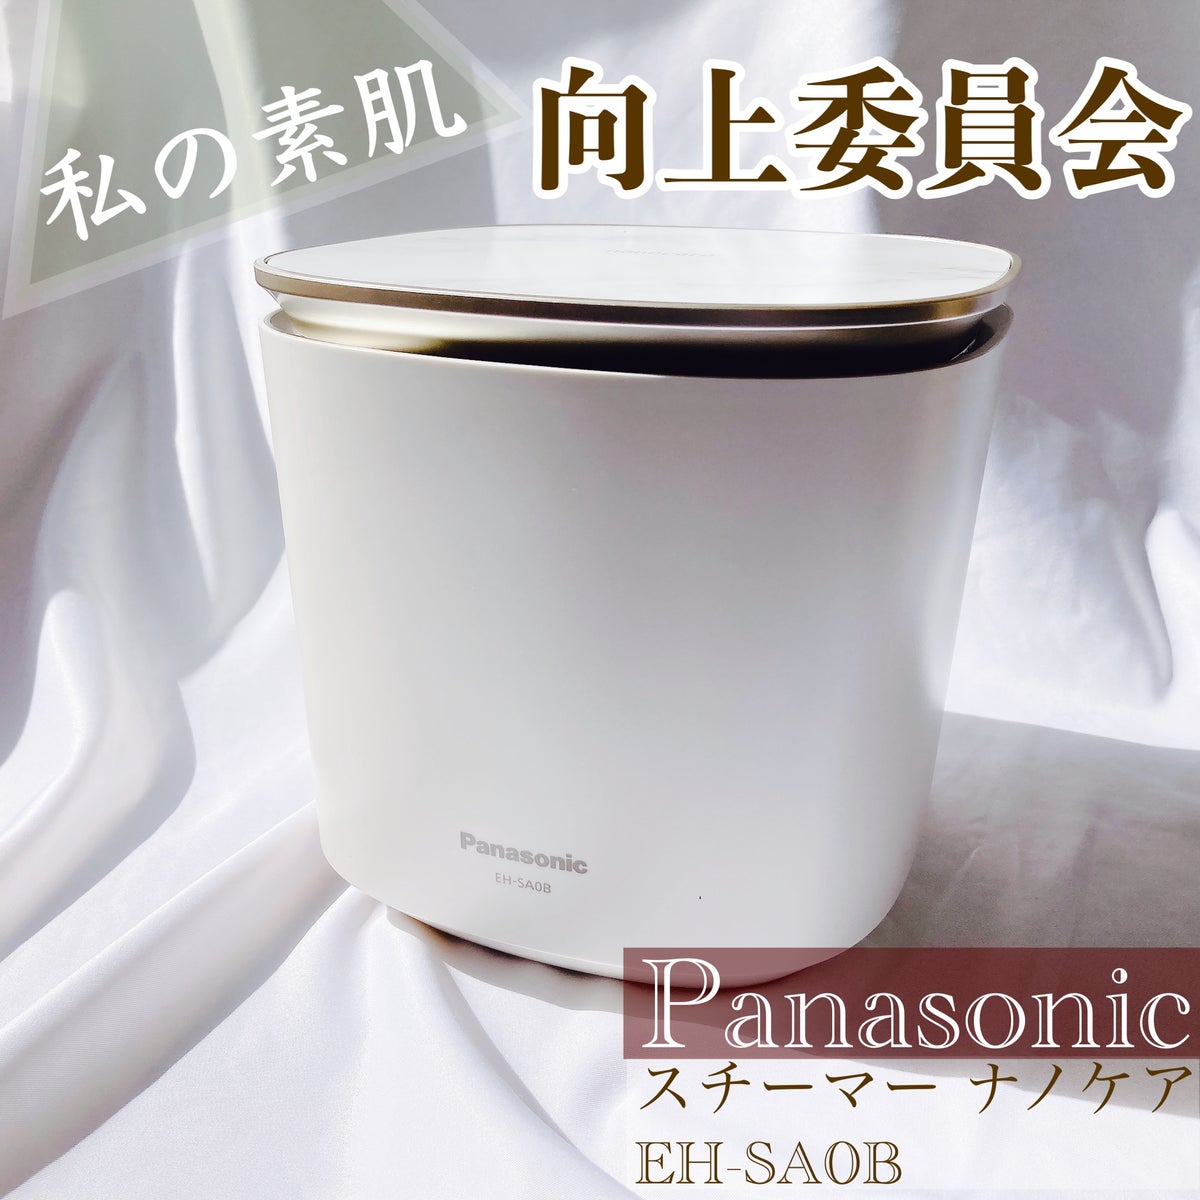 Panasonic パナソニック スチーマー ナノケア EH-SA0B 美顔器